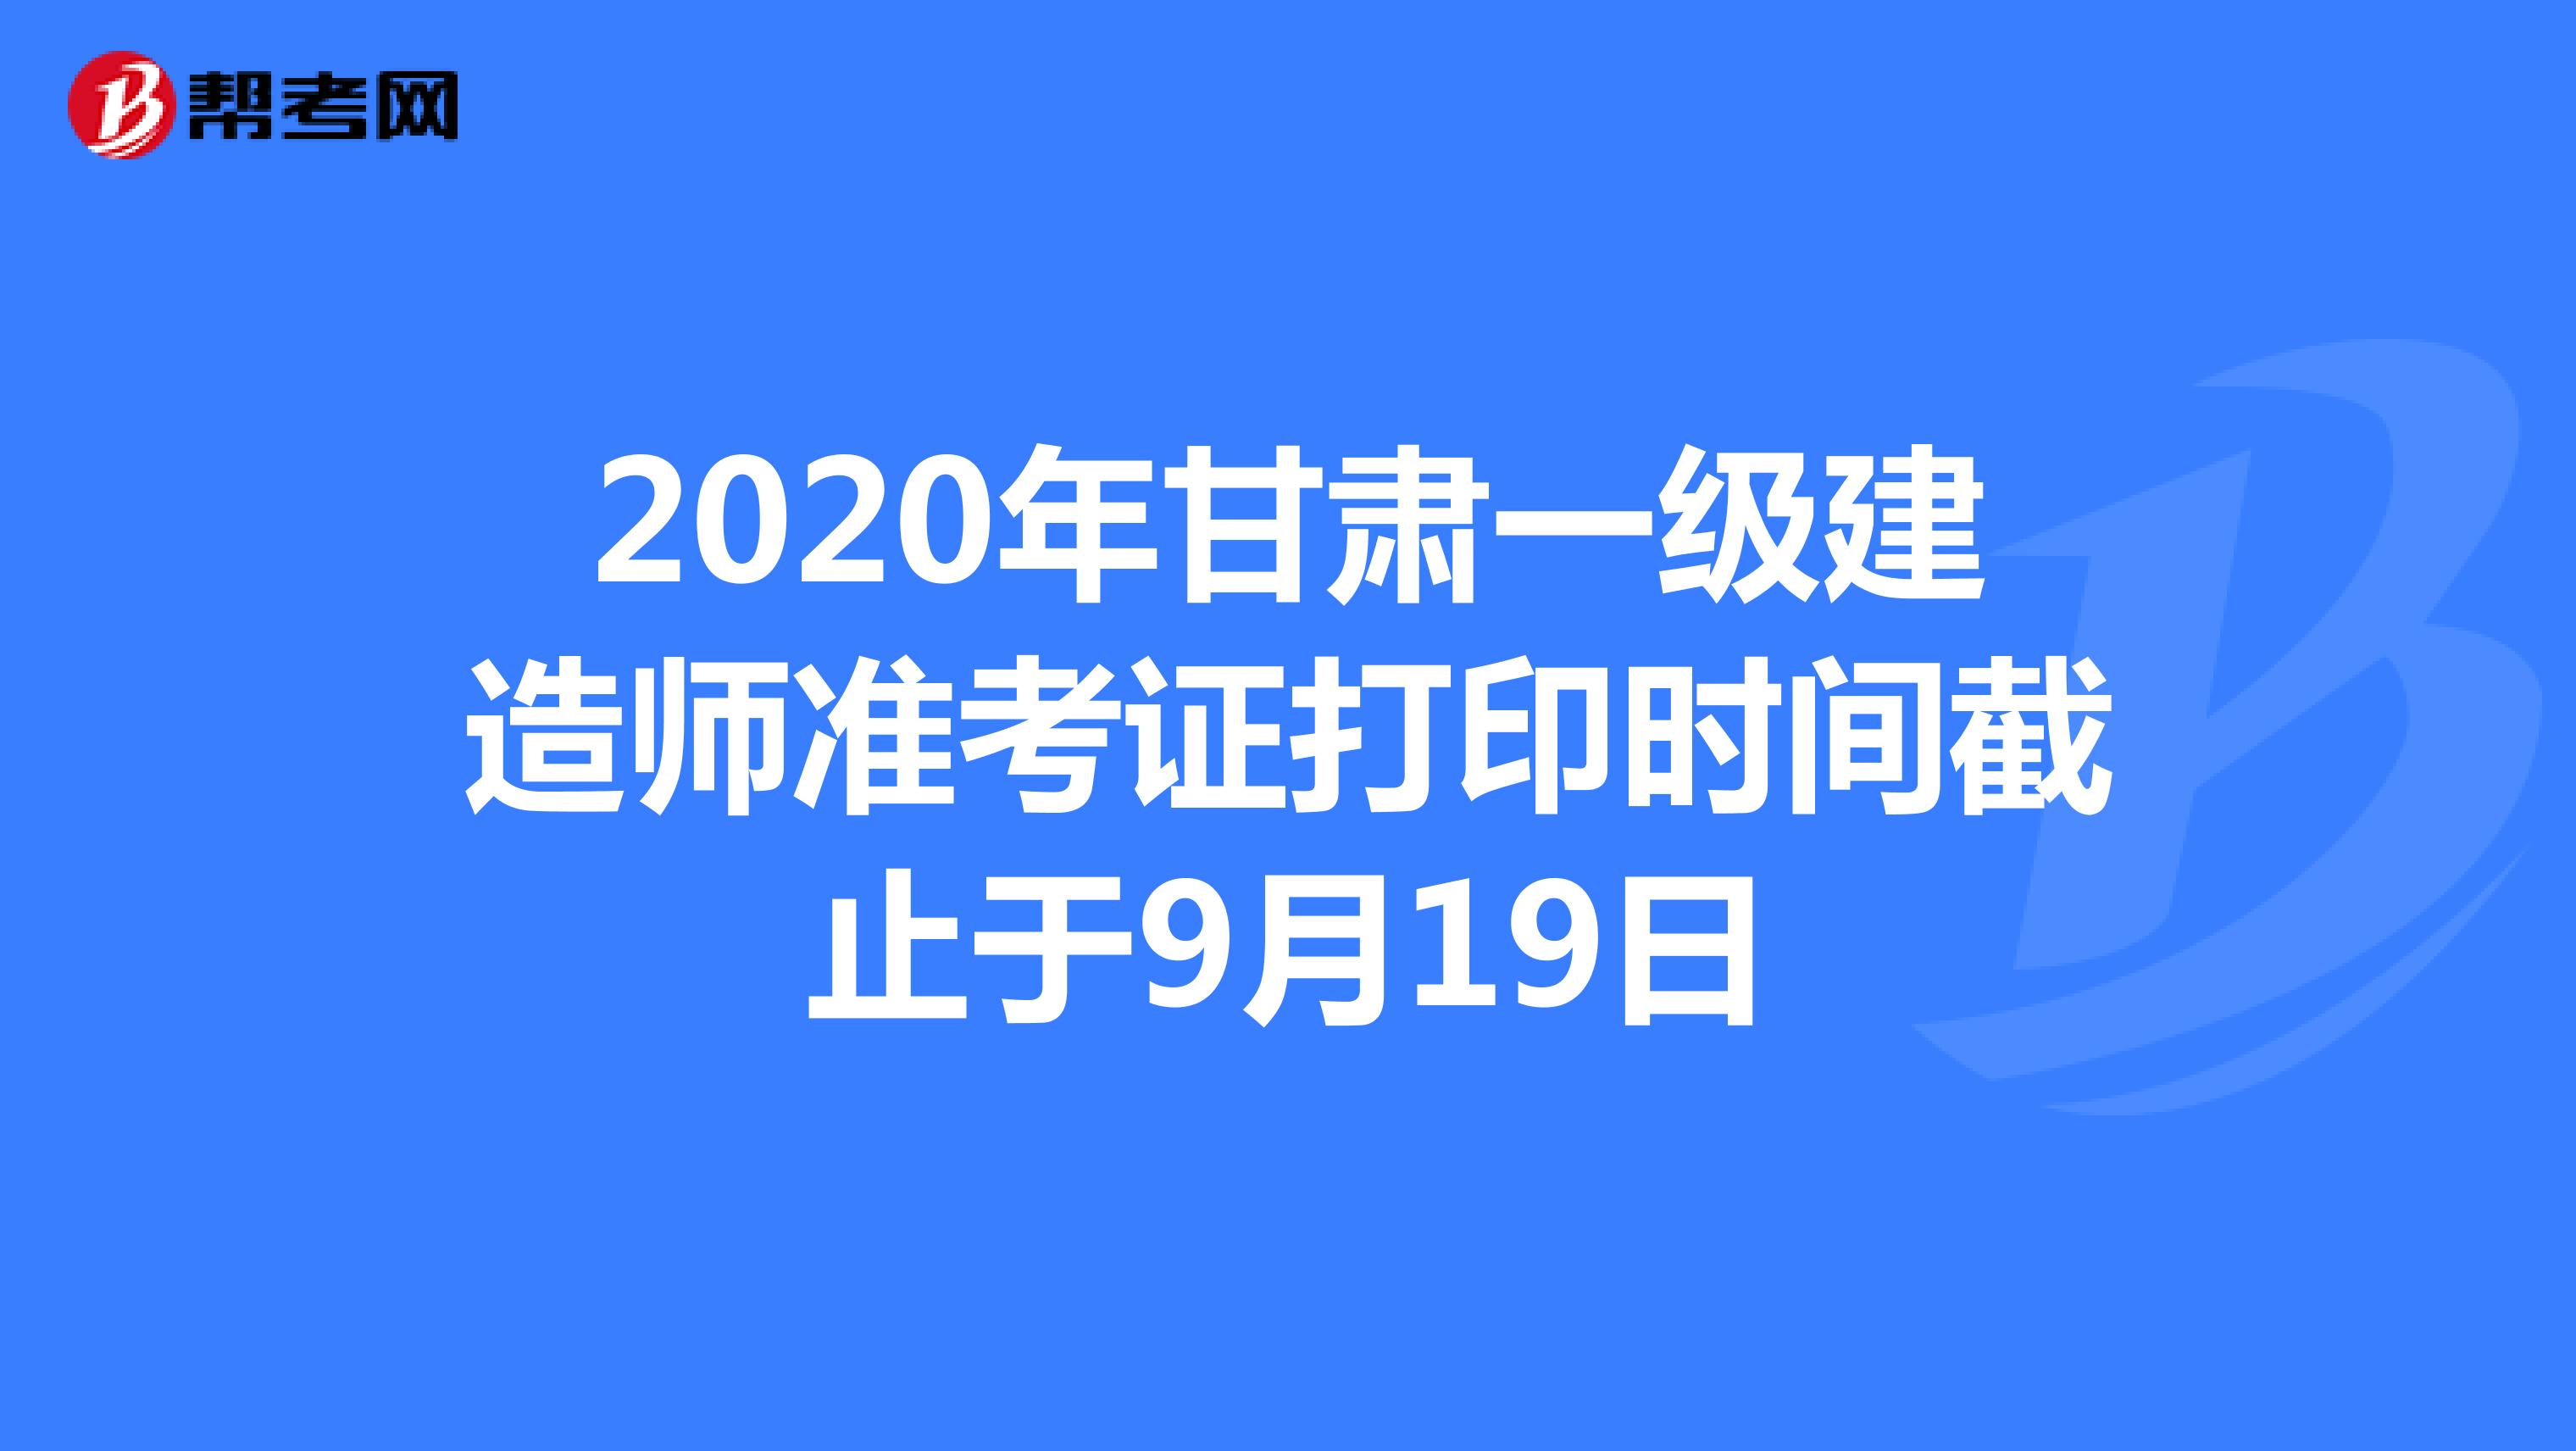 2020年甘肃一级建造师准考证打印时间截止于9月19日